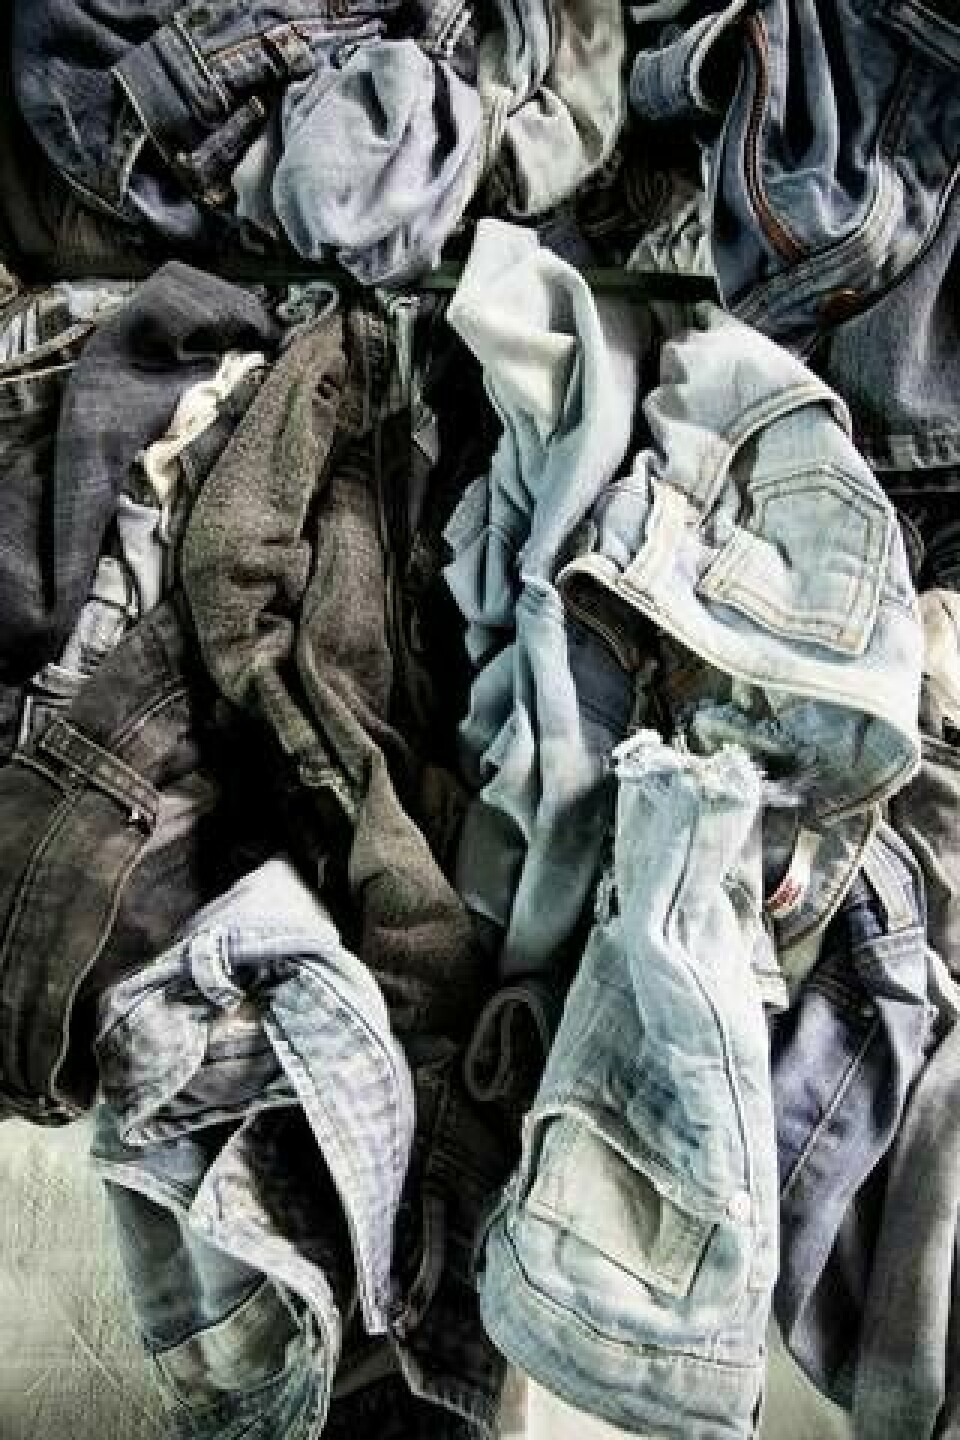 Renewcell använder mycket jeans i sin återvinningsprocess. Jeans är enkelt att sortera, har ofta ett högt bomullsinnehåll och är lätt att avfärga. Foto: Jörgen Appelgren